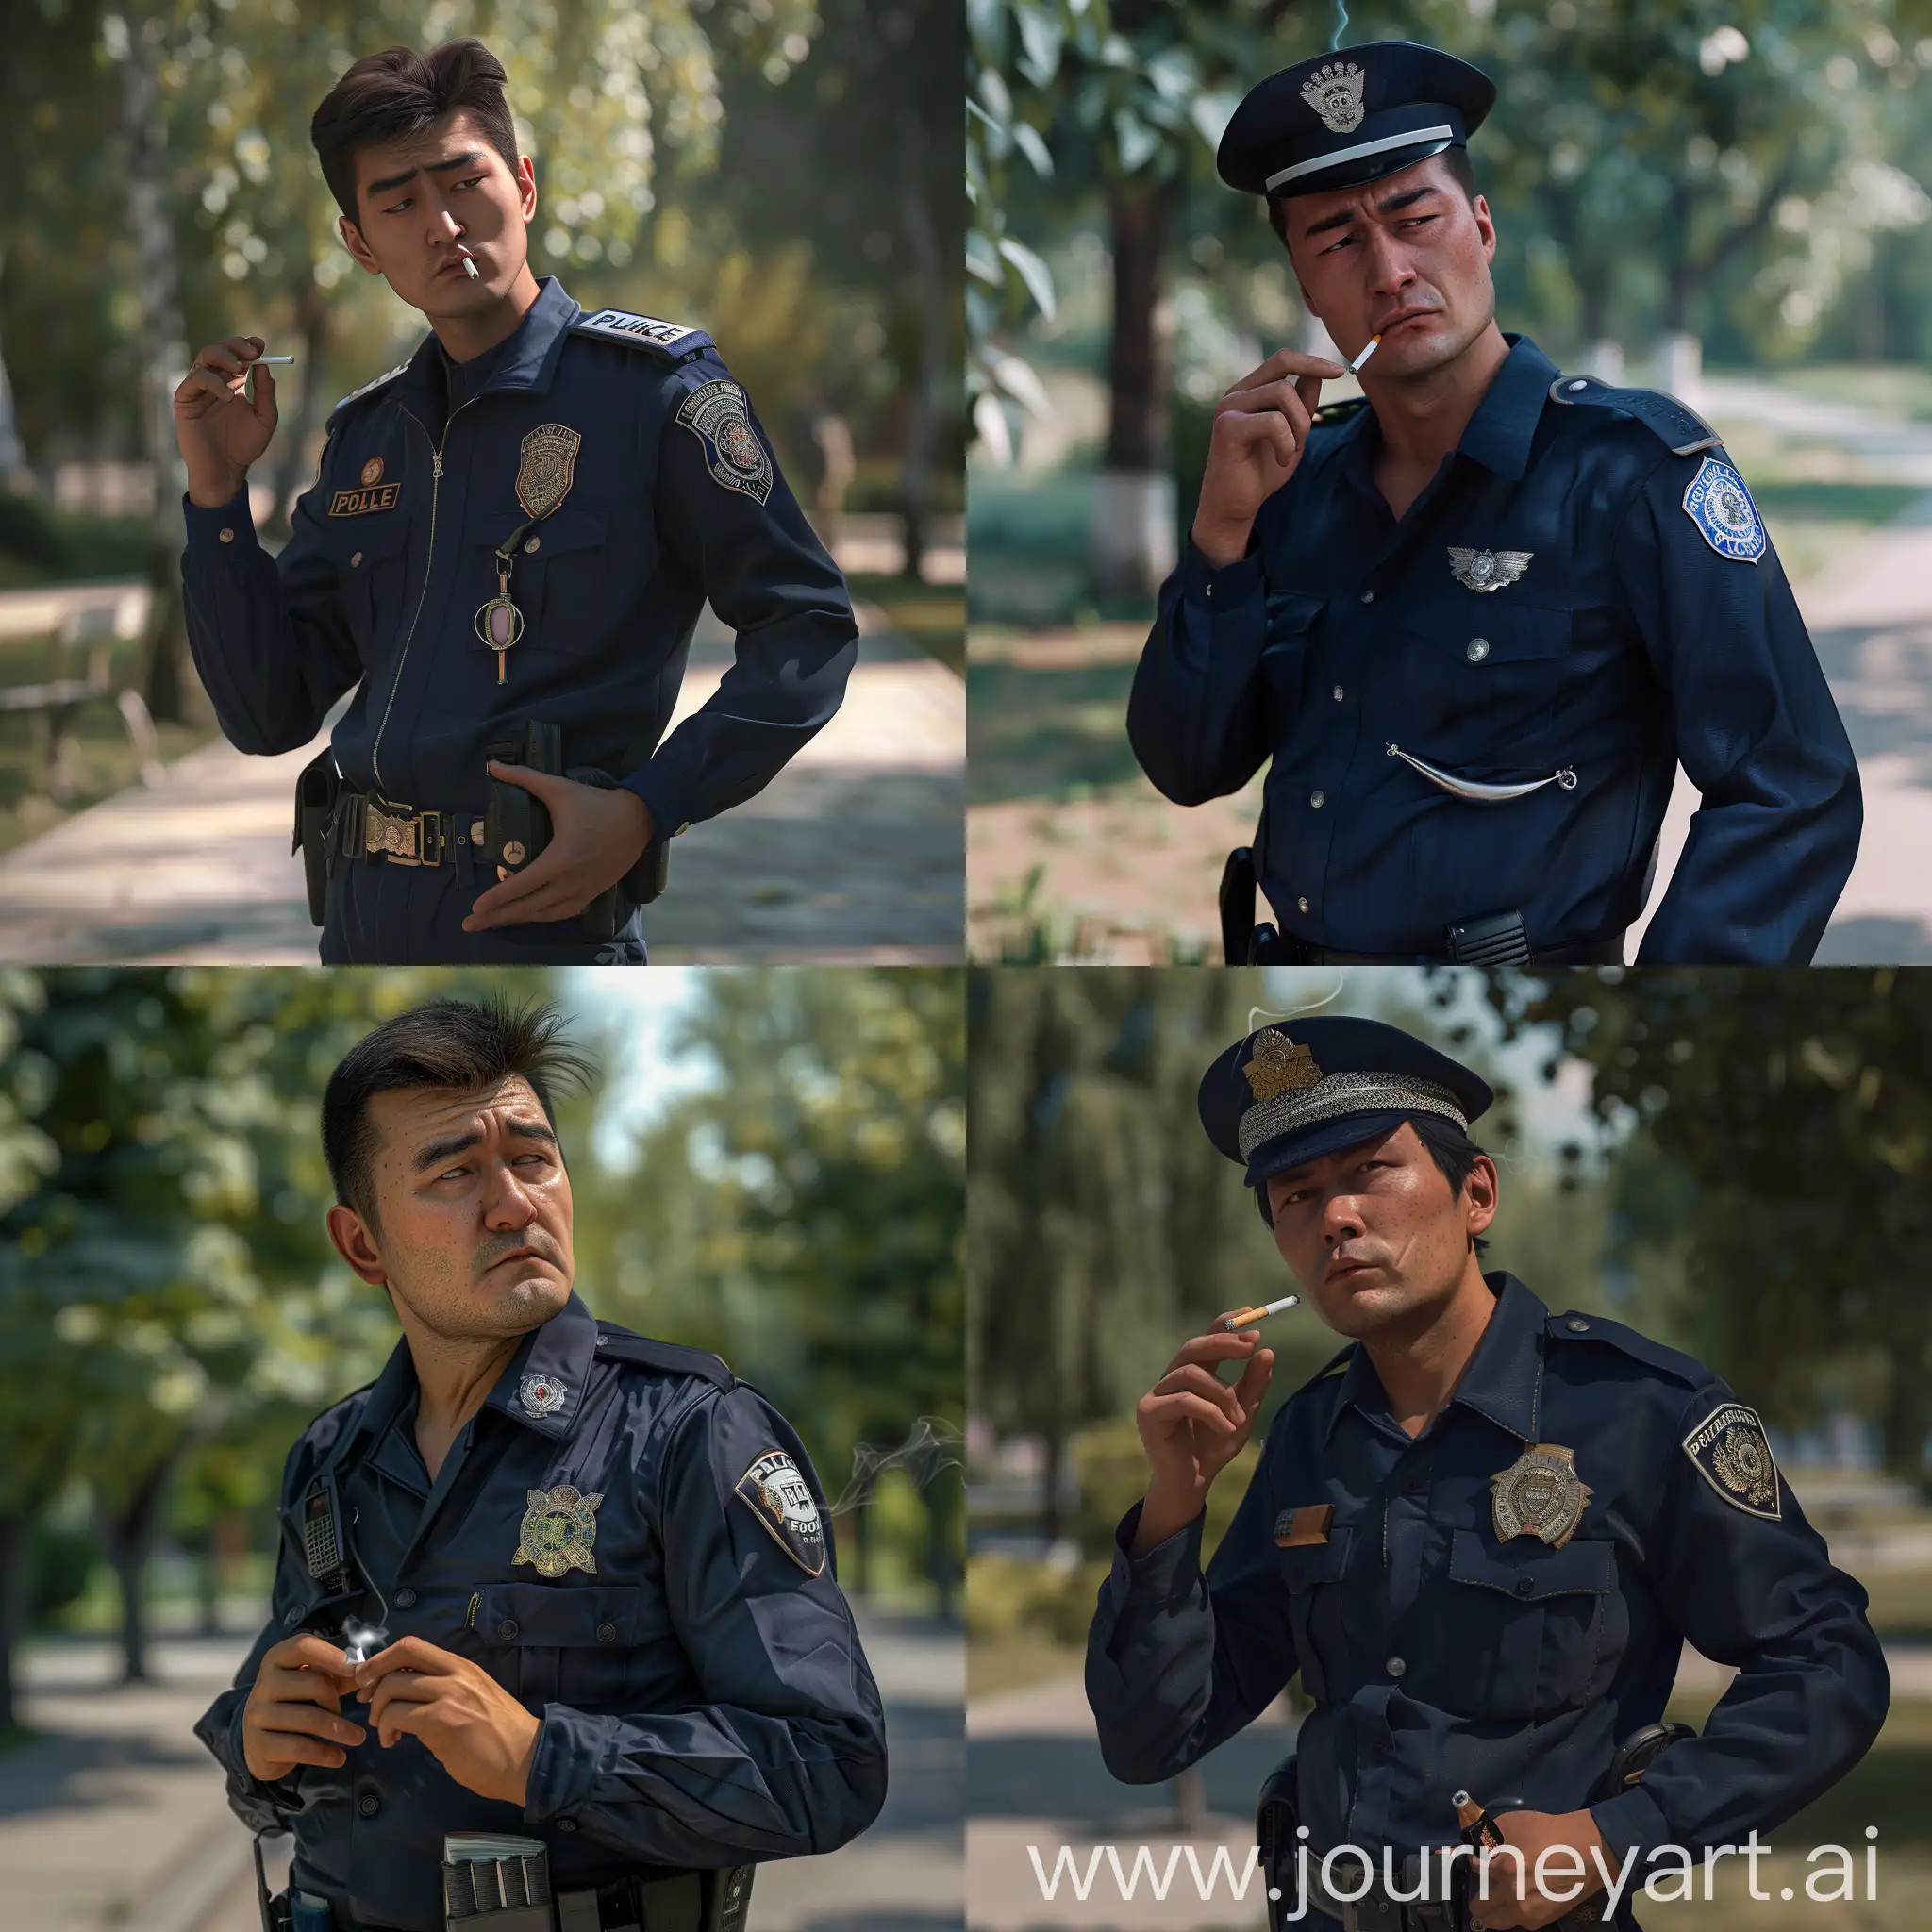 мужчина казахской внешности, в полицейской одежде, в руках сигарета, стоит щурясь, задний фон парк, реалистично, 8к, гипер реализм, супер детализация